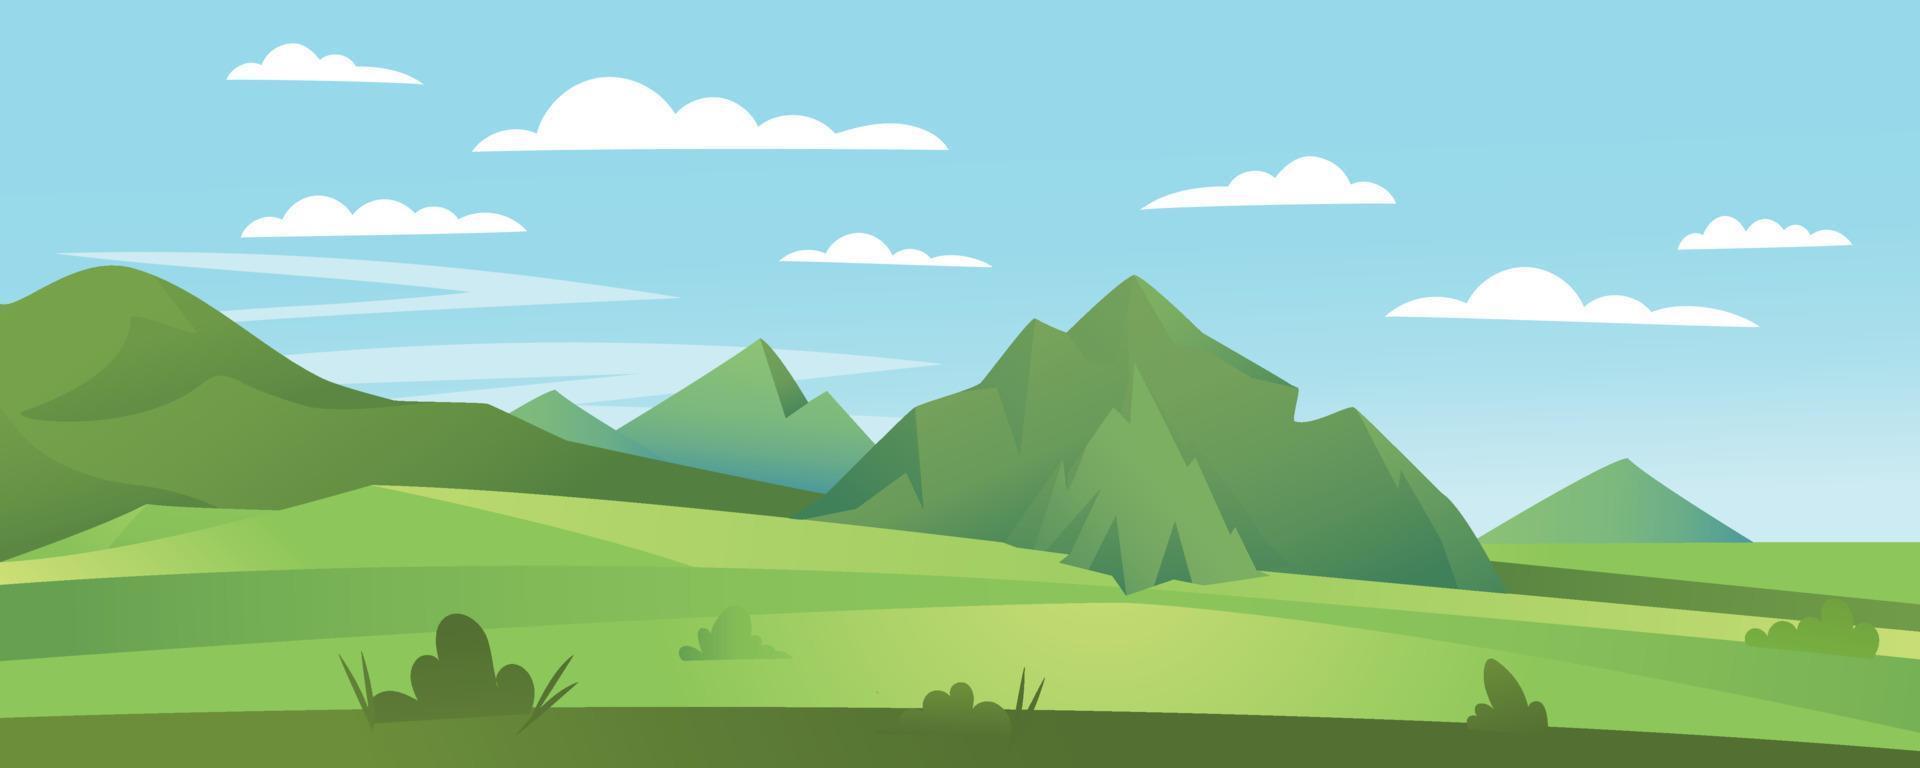 cartoon plat panorama van lente zomer prachtige natuur, groene graslanden weide met bergen op horizon achtergrond, zomer berglandschap, dageraad over de vallei. vector illustratie